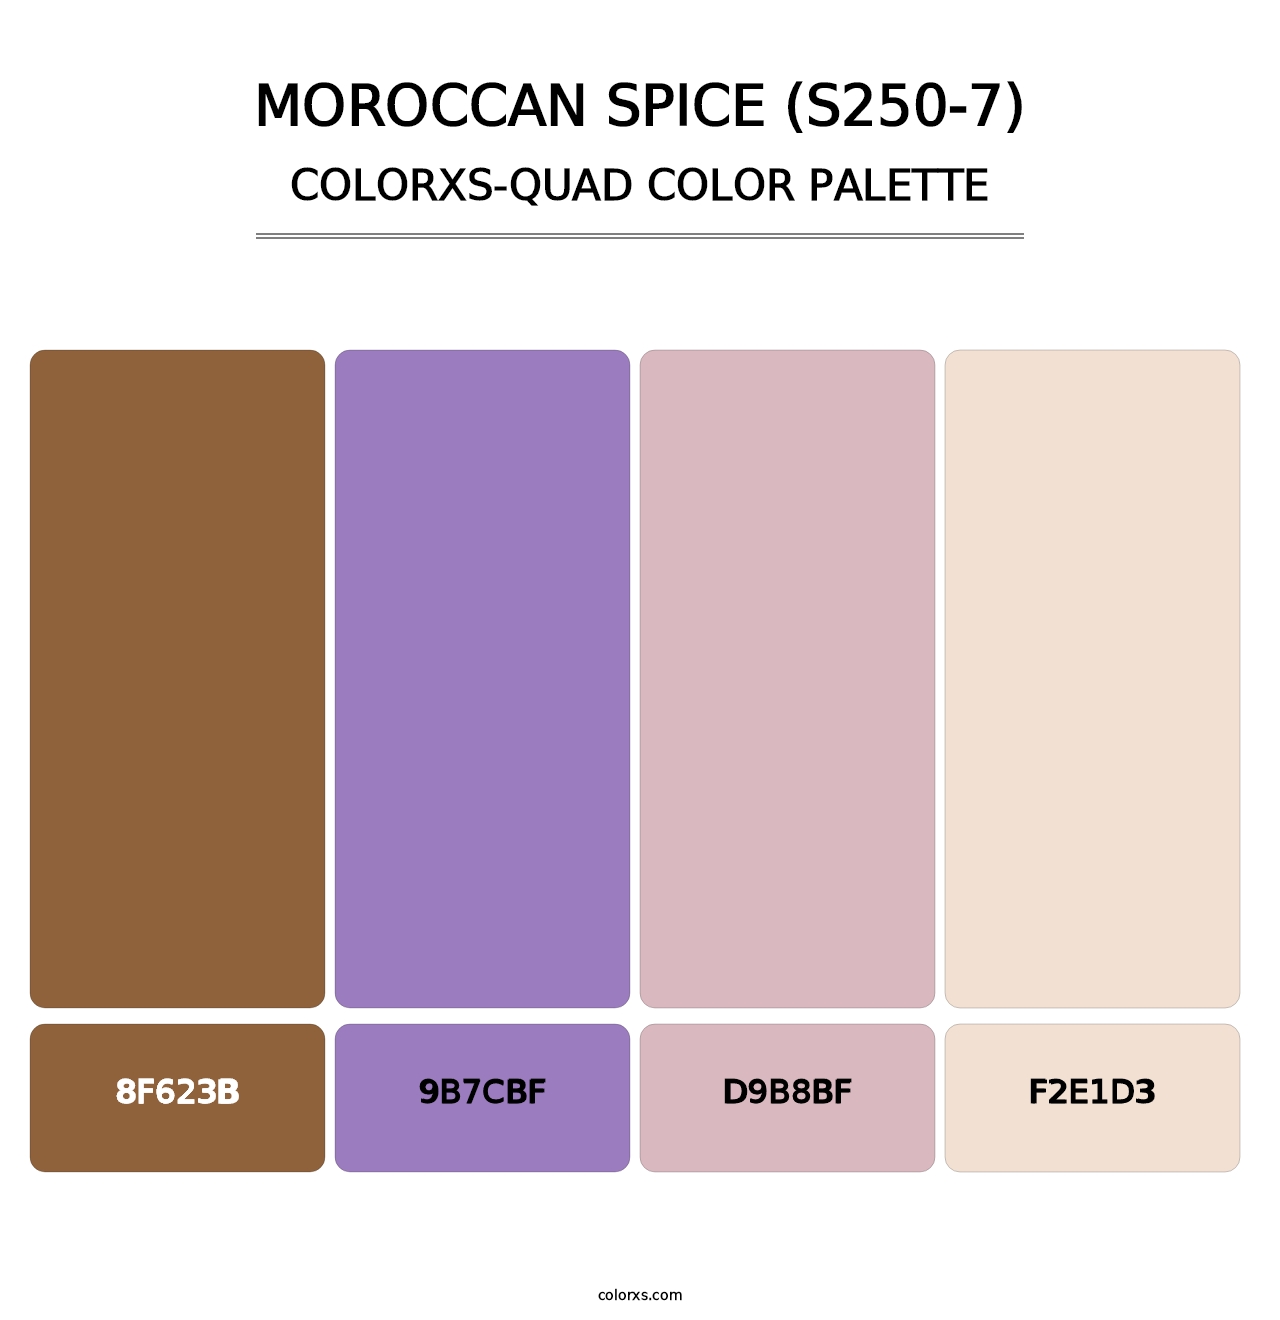 Moroccan Spice (S250-7) - Colorxs Quad Palette